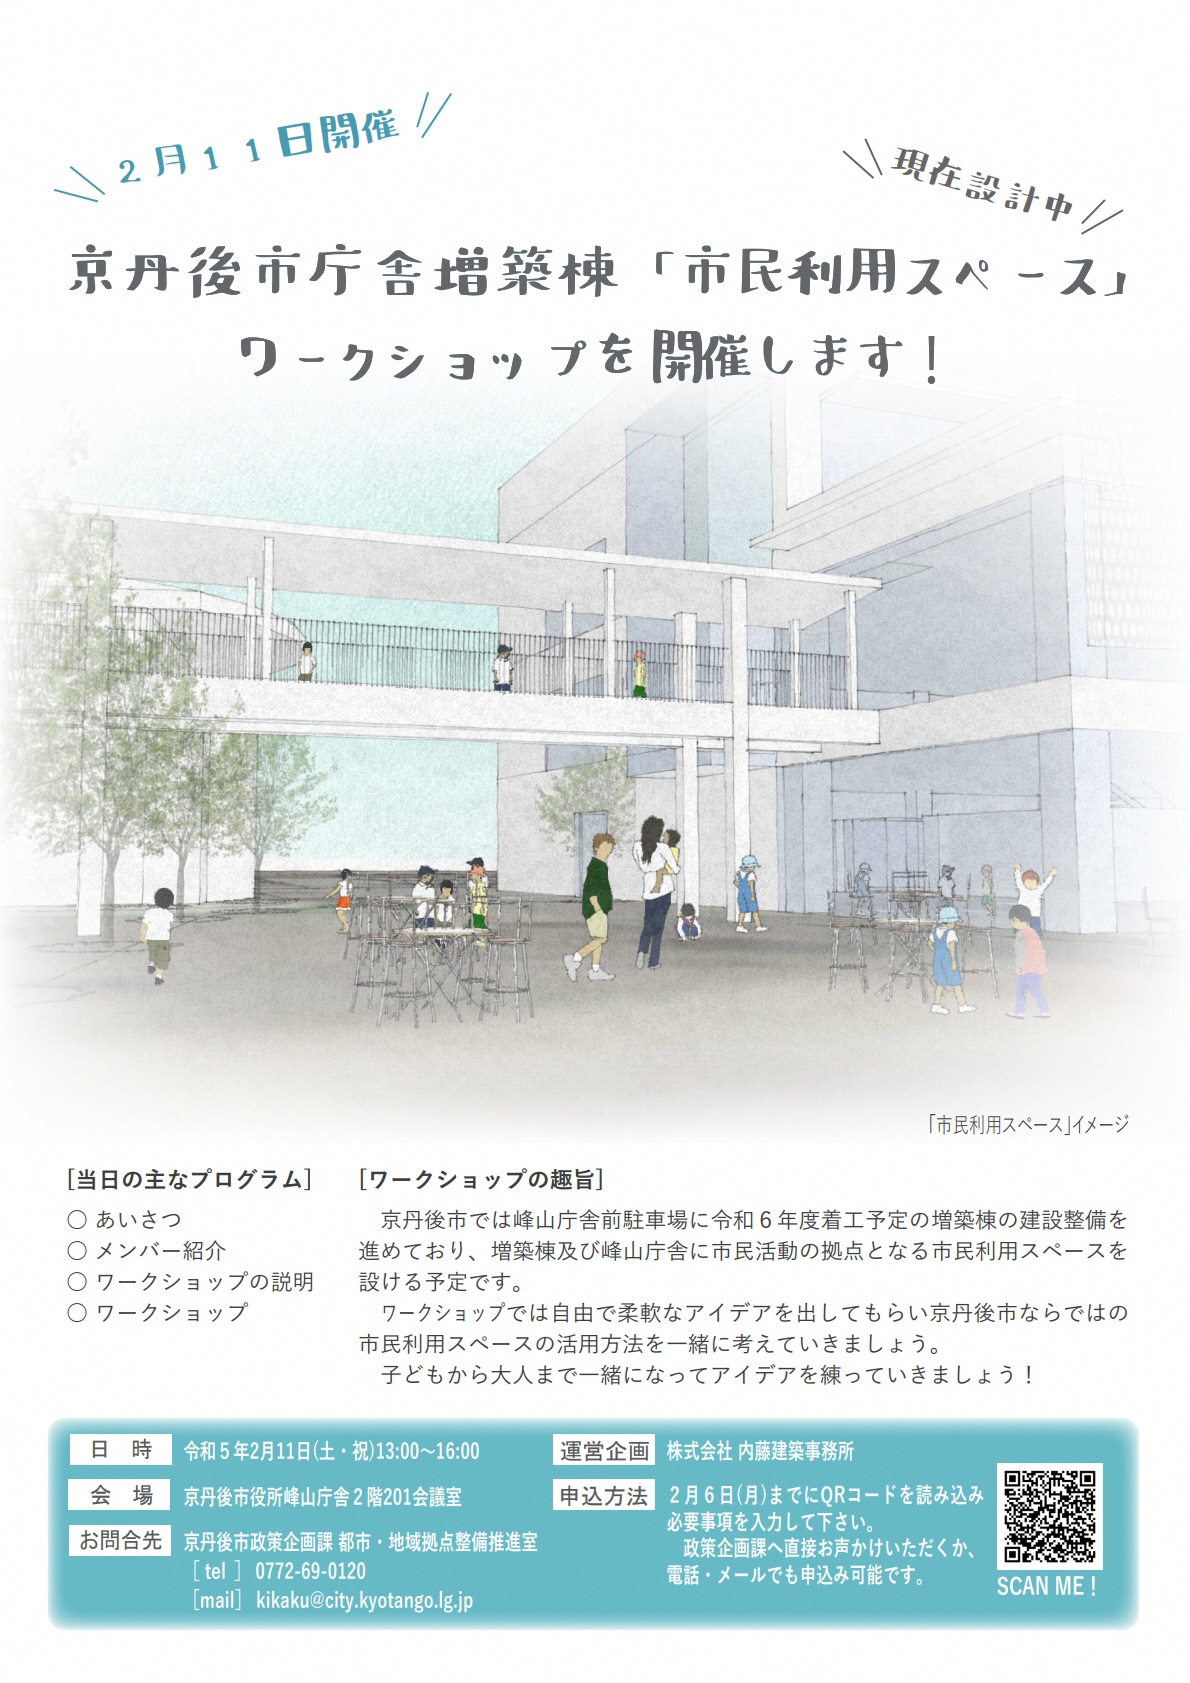 （イメージ）京丹後市庁舎増築棟「市民利用スペース」ワークショップ（令和5年2月11日（土・祝）開催）参加者の募集を開始します!